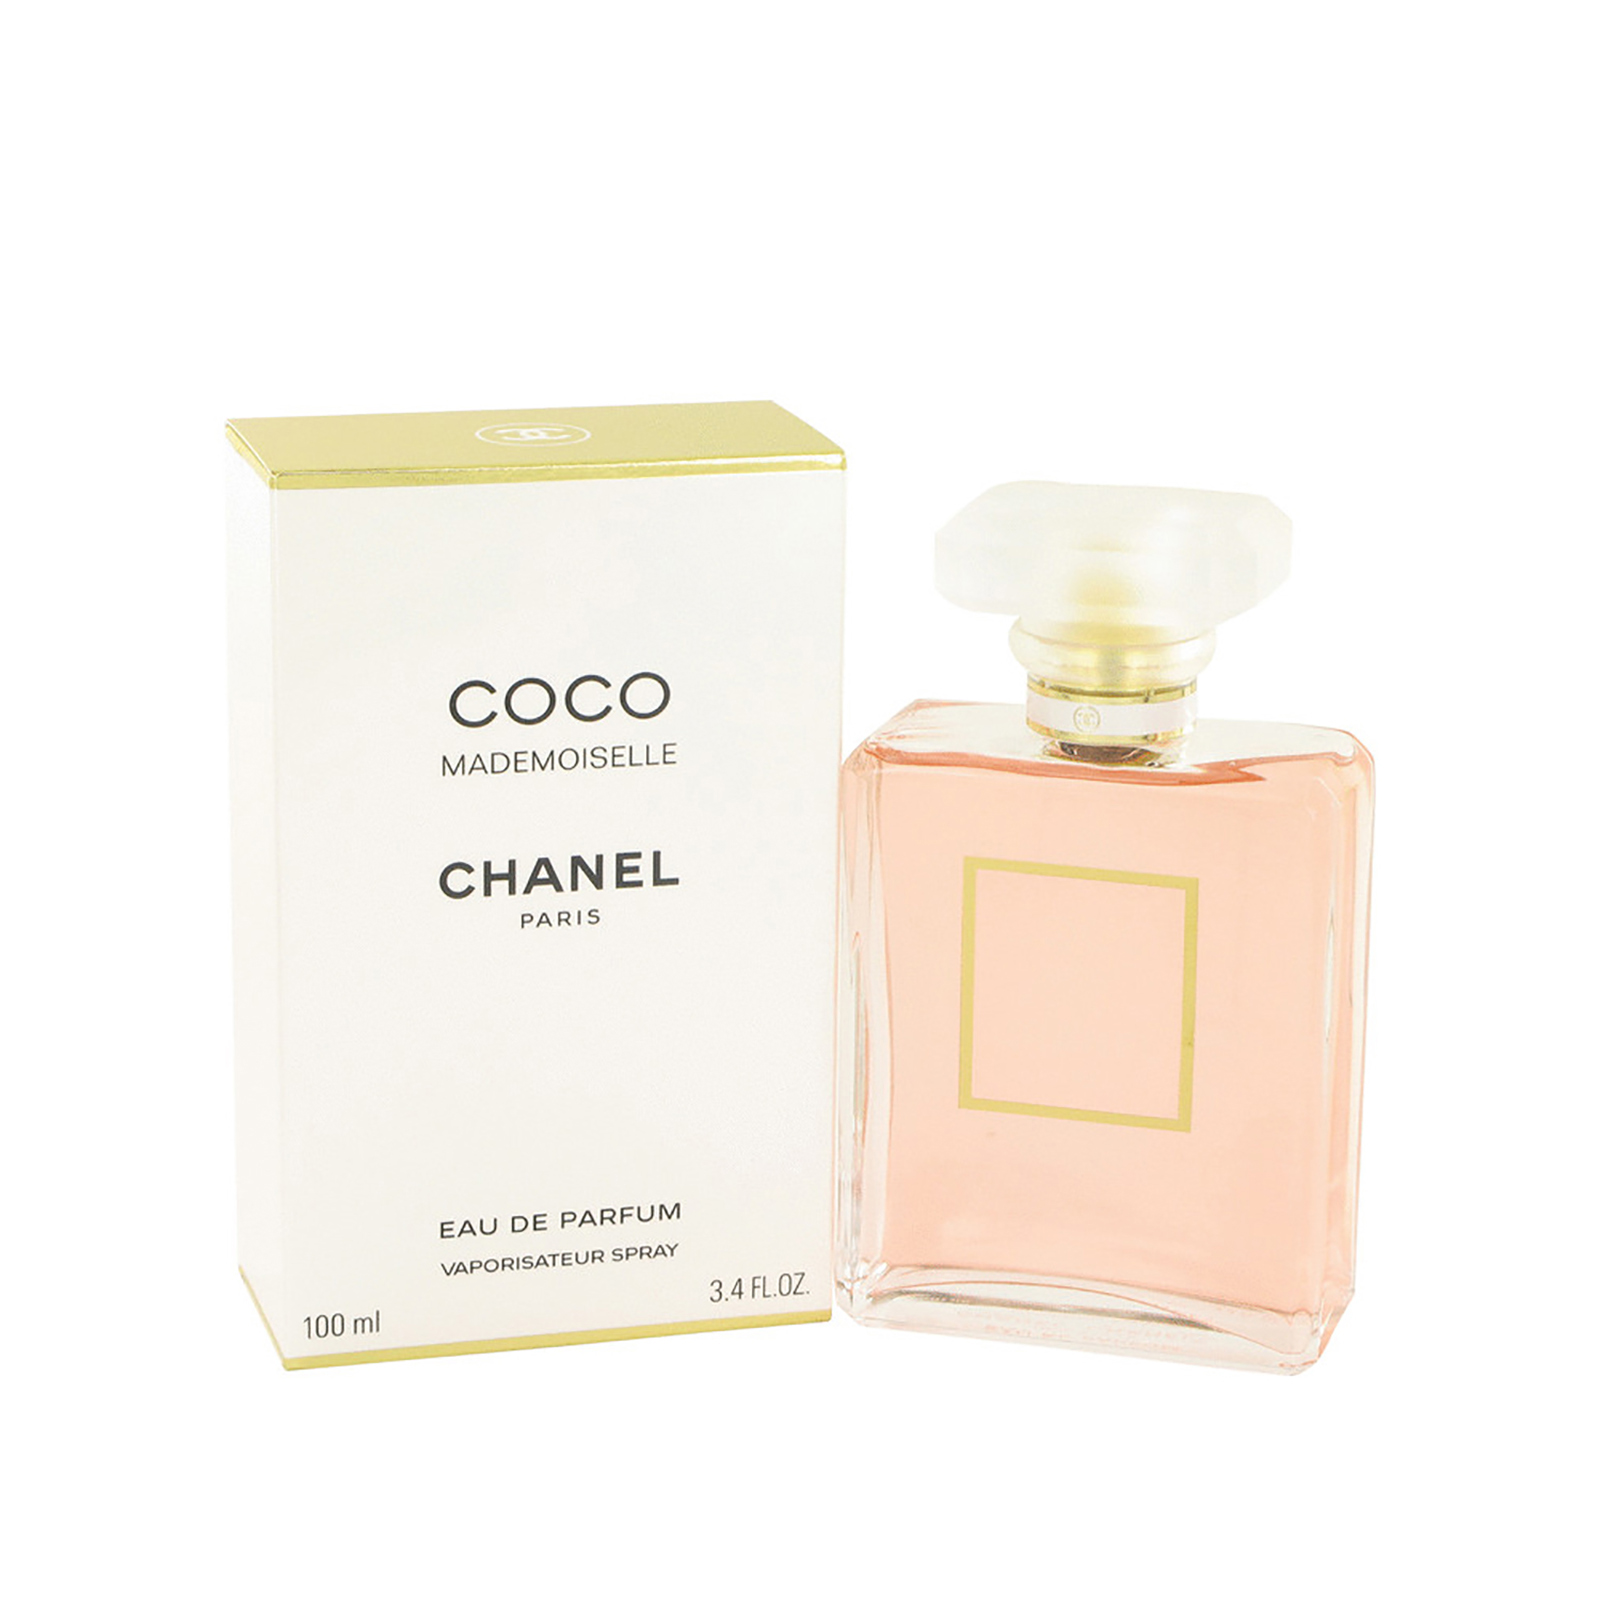 Chanel Coco Mademoiselle Eau De Parfum Intense 3.4 - Depop